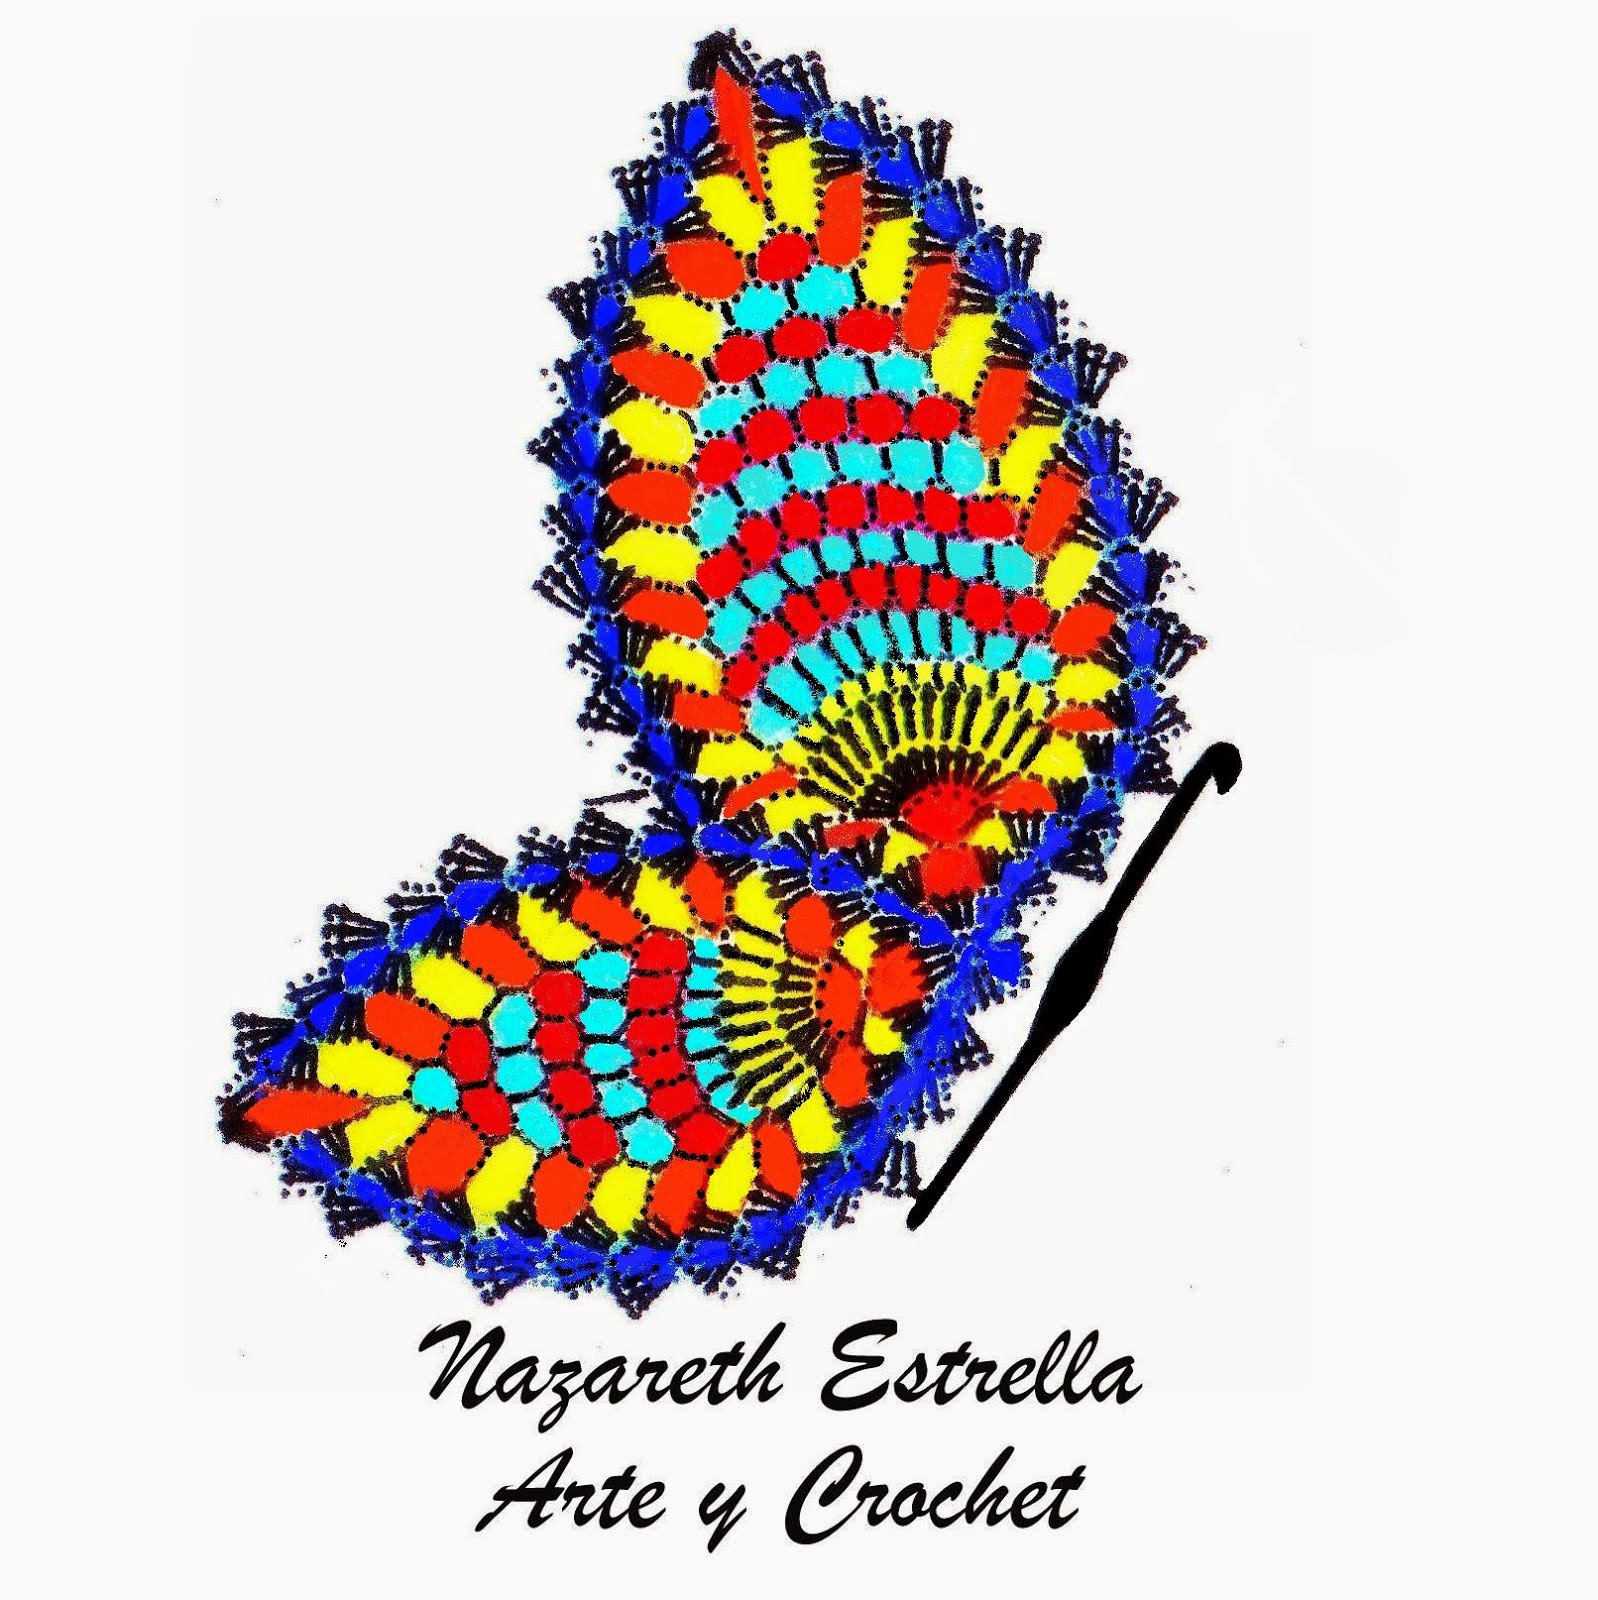 Bazar de Creativos: Nazareth Estrella Arte y Crochet